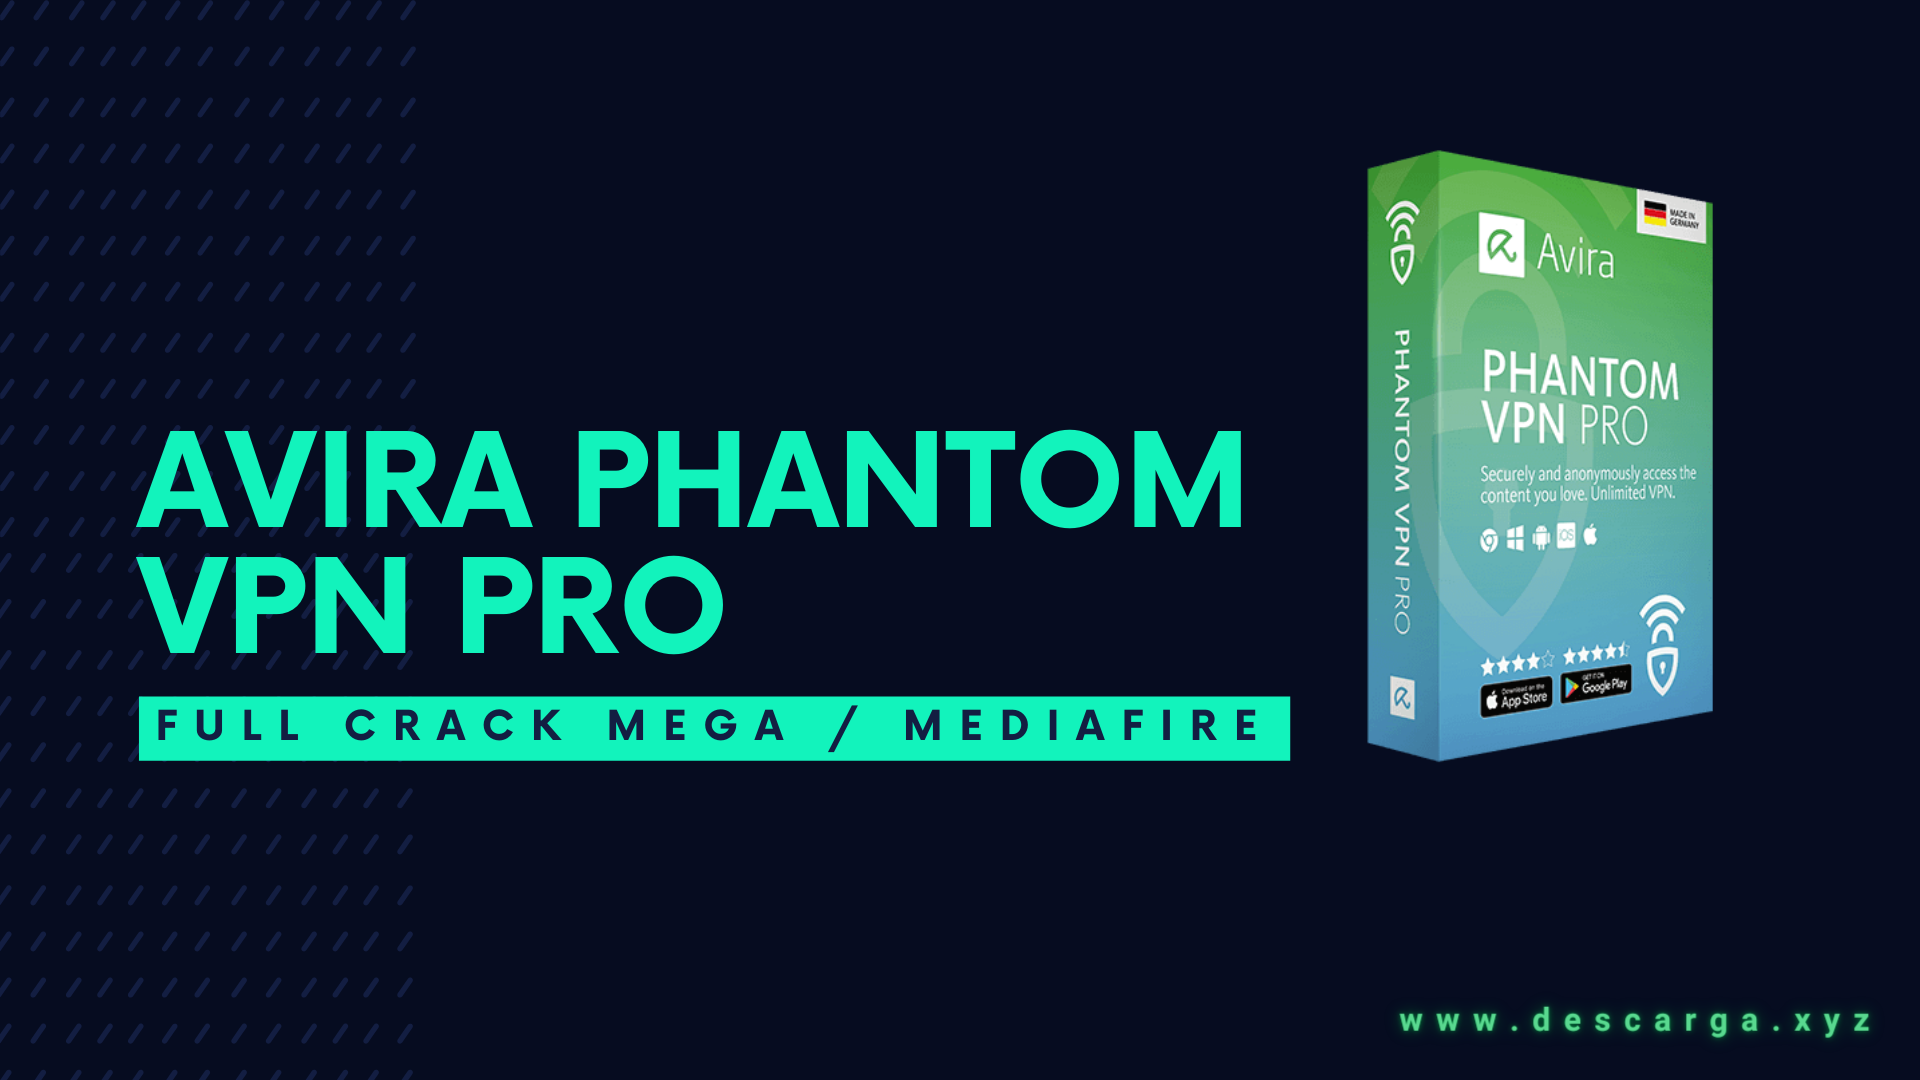 Download 🥇 Avira Phantom VPN Pro FULL! v2.44.1.19908 ✅ MEGA